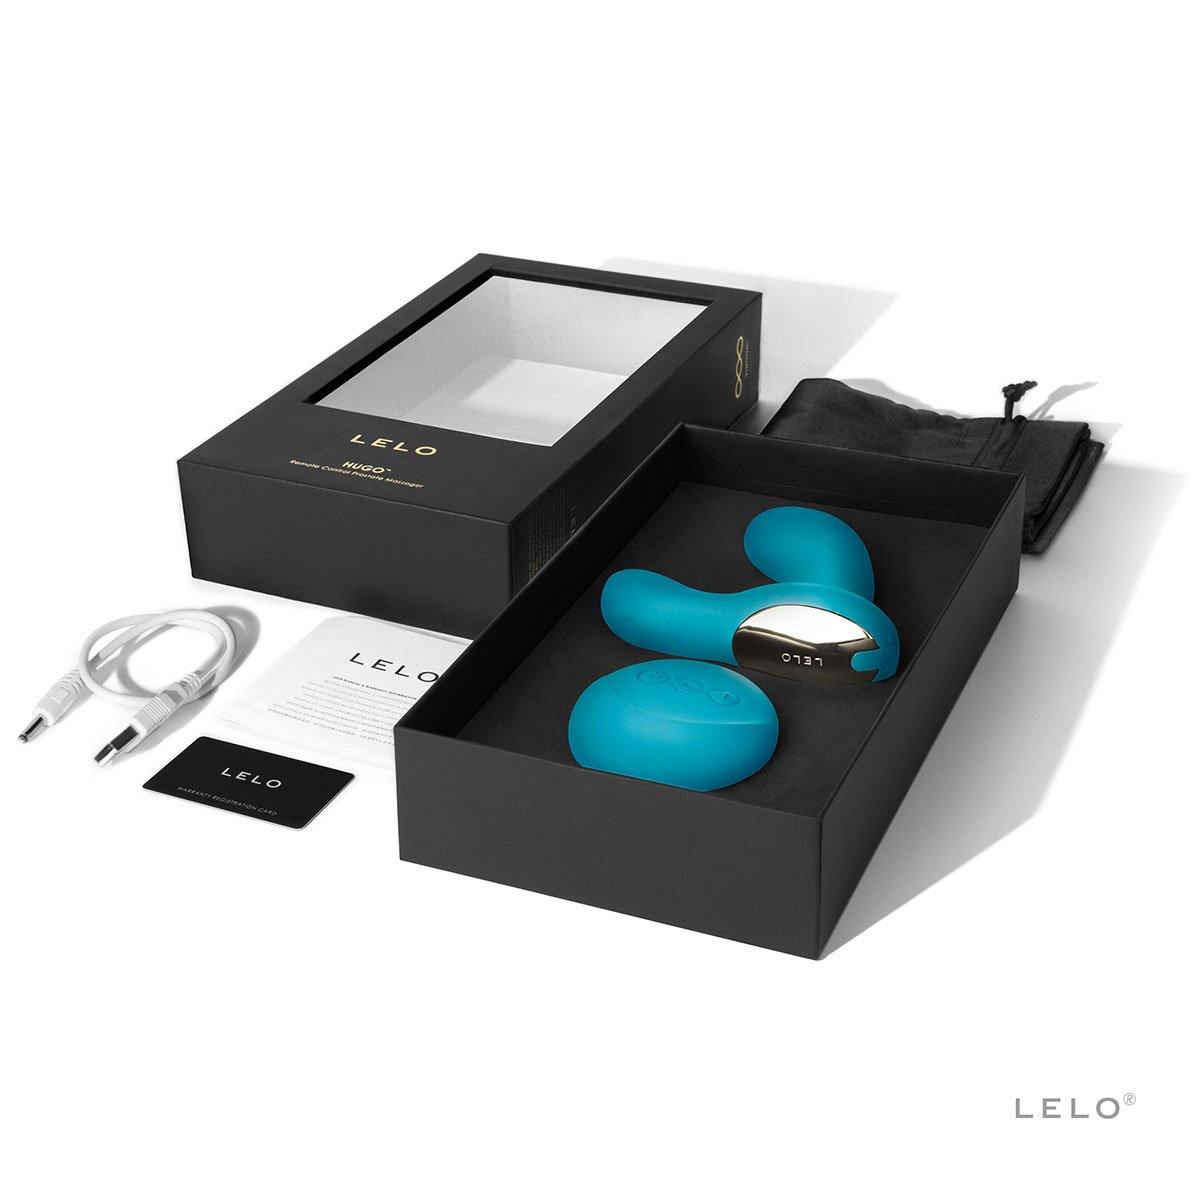 Lelo Hugo - Buy At Luxury Toy X - Free 3-Day Shipping